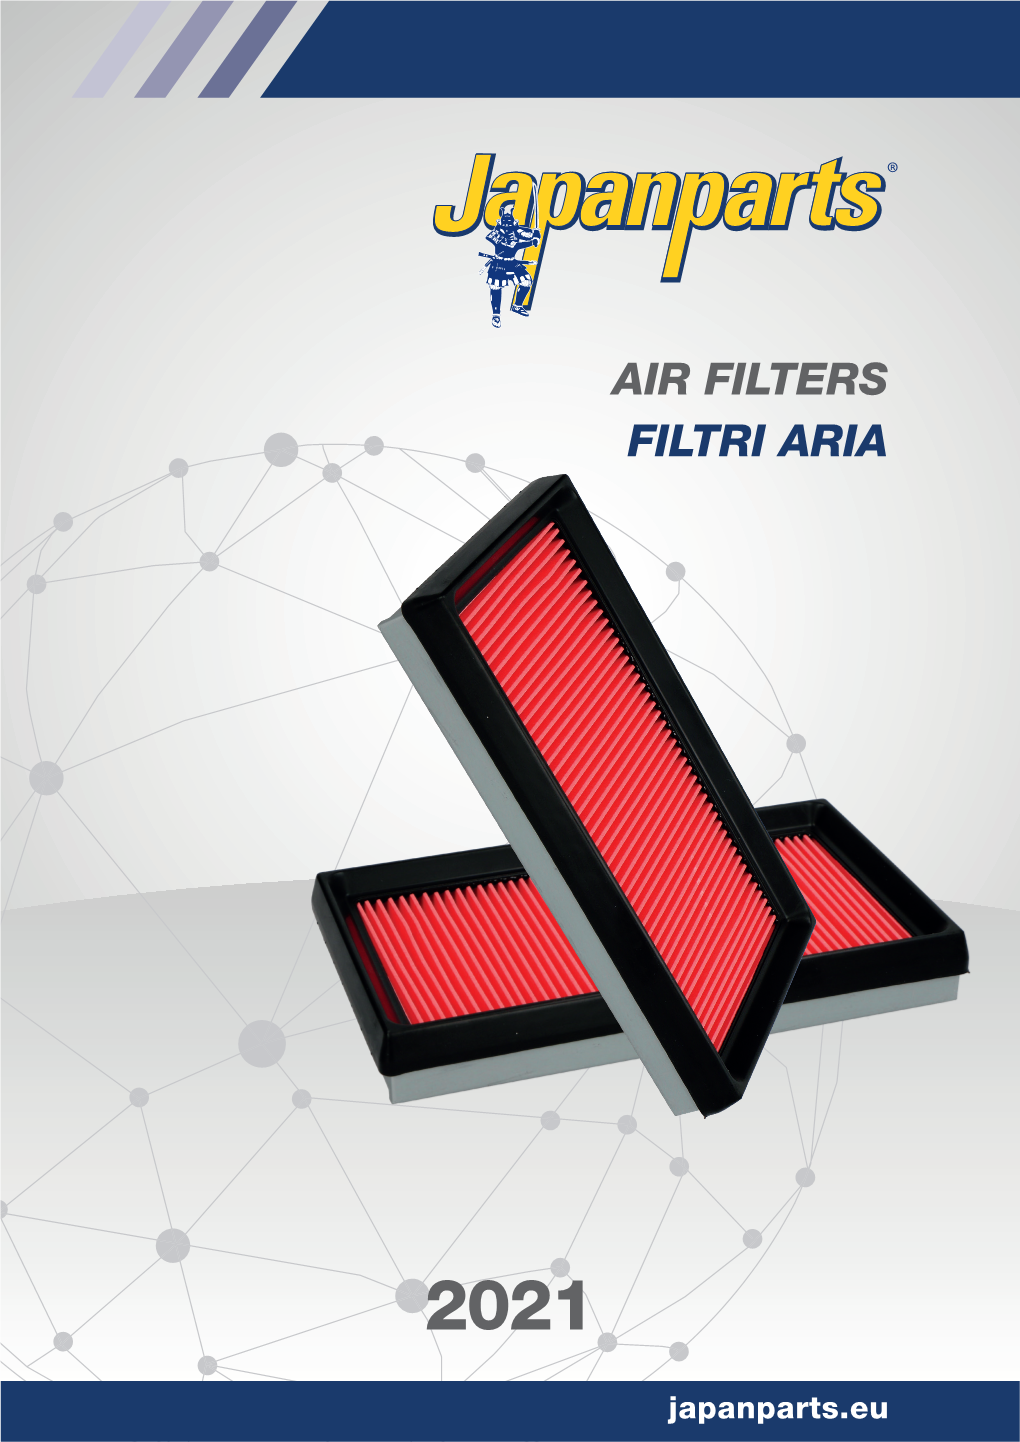 Air Filters Filtri Aria